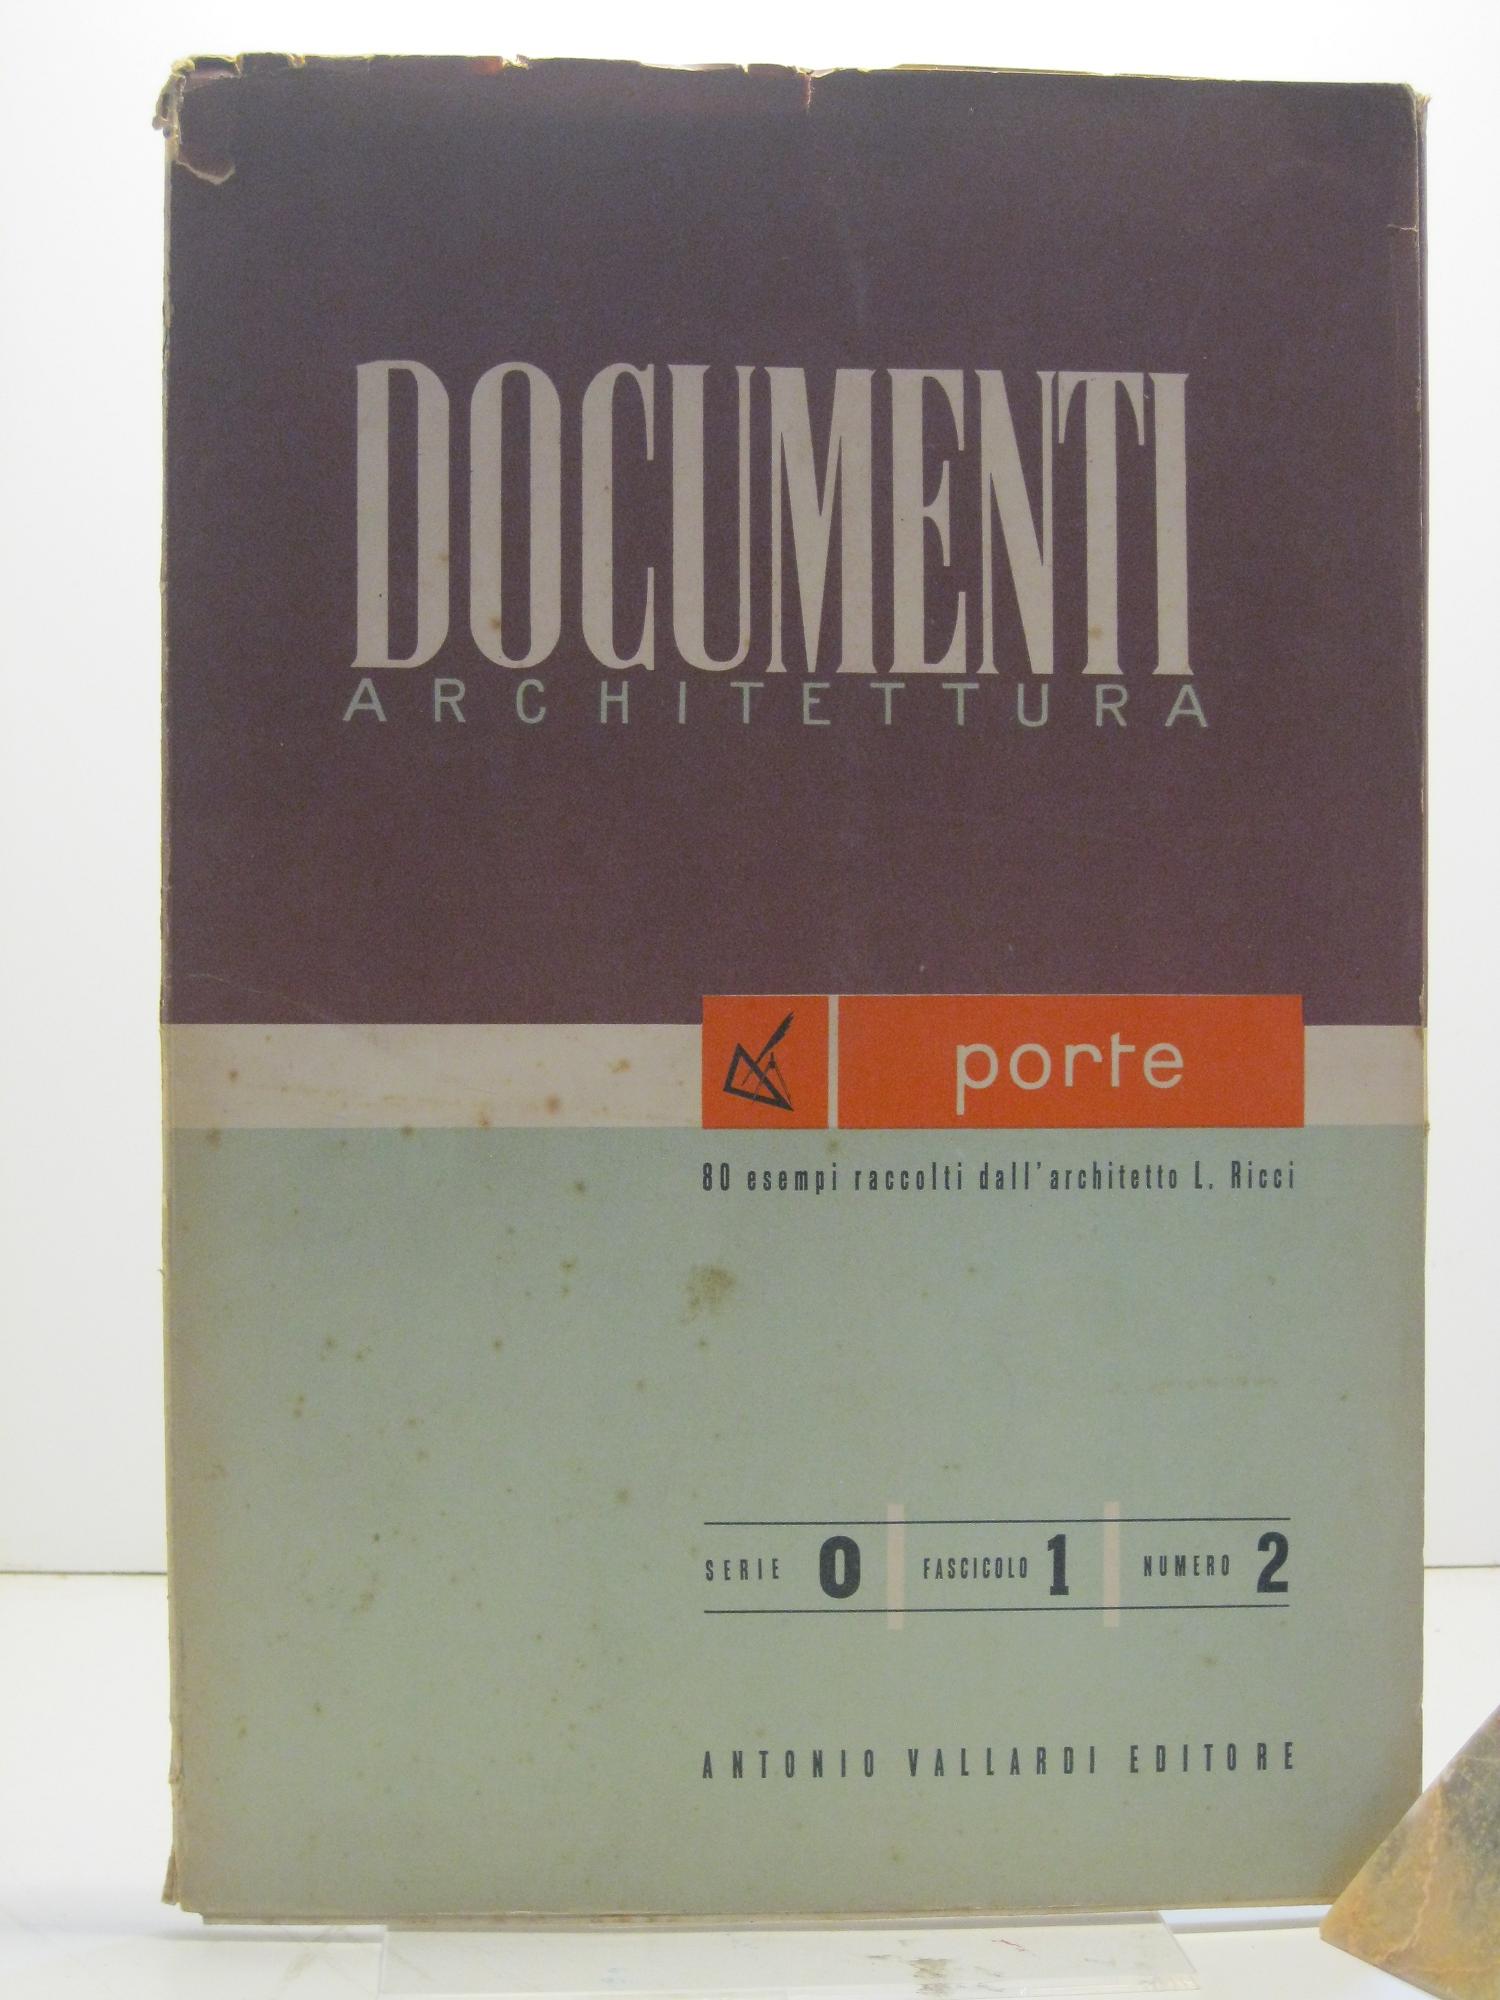 Documenti architettura. Serie 0, fascicolo 1, numero 2. Porte, 80 esempi raccolti dall'architetto L. Ricci